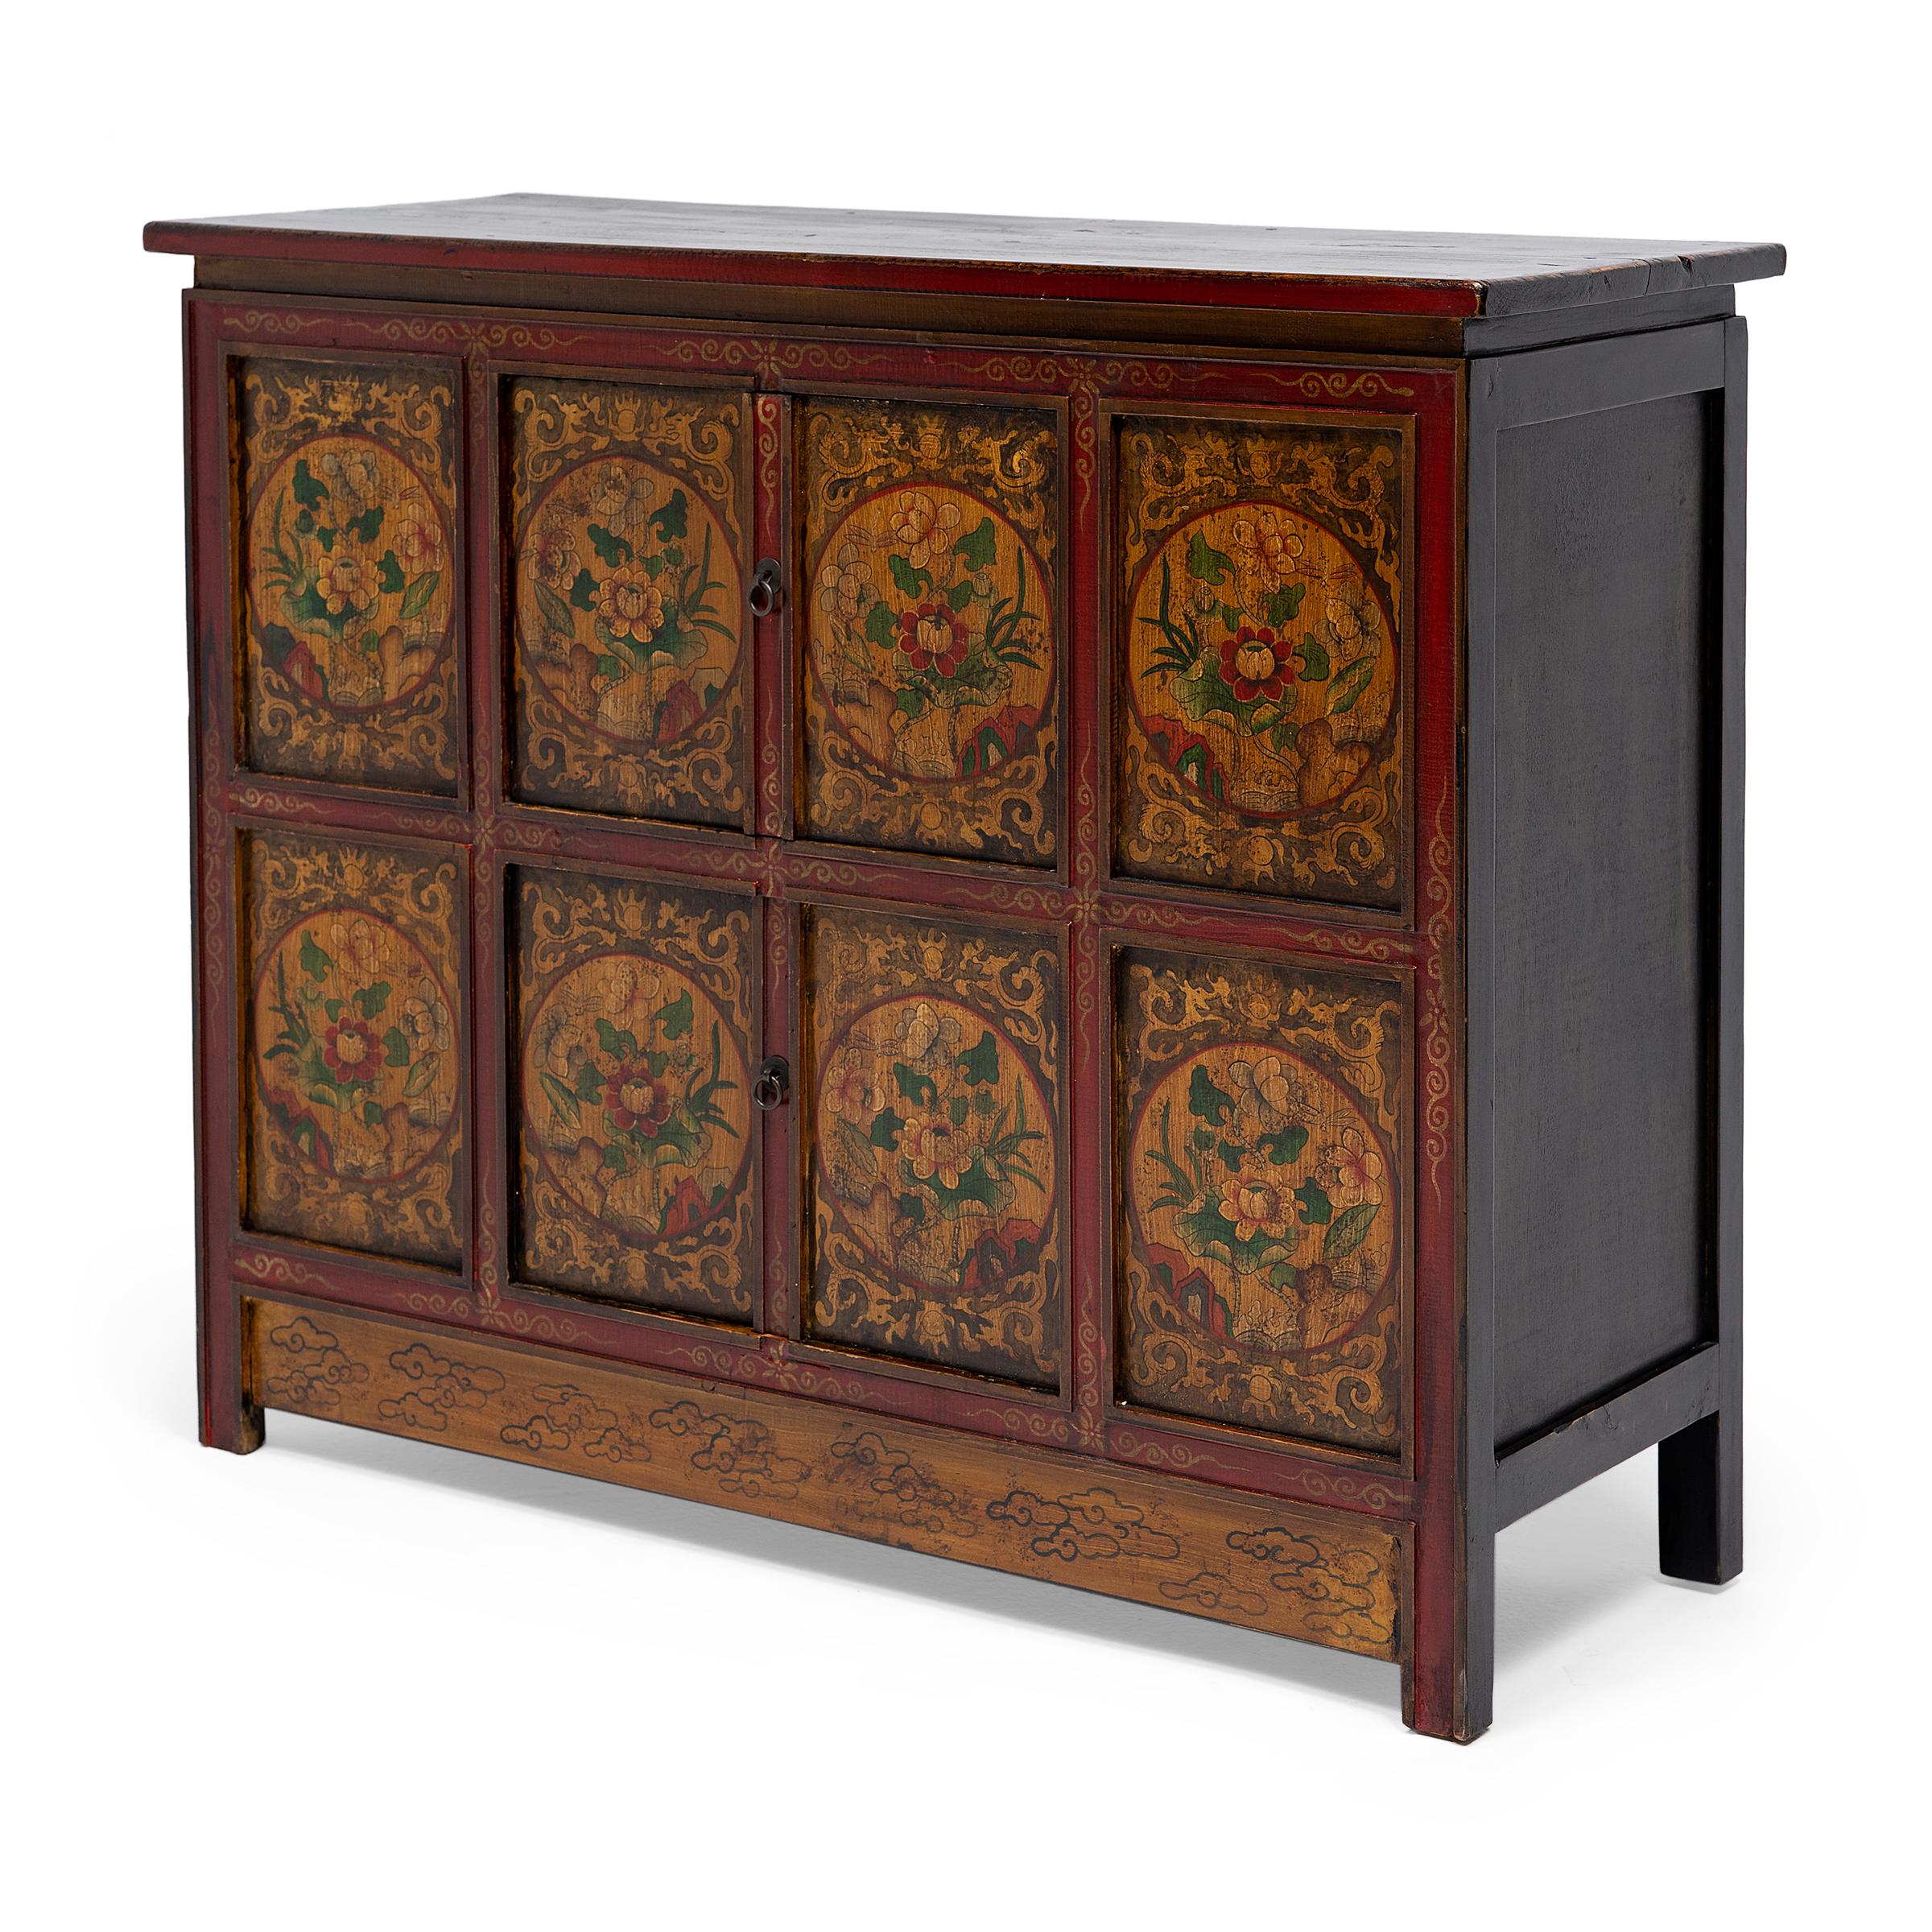 Ce meuble de rangement de la fin du XIXe siècle est peint à la main dans le style sino-tibétain avec des peintures à la gouache aux pigments vifs dans une palette de rouge, de jaune, de vert et de noir. La façade du meuble est divisée en huit